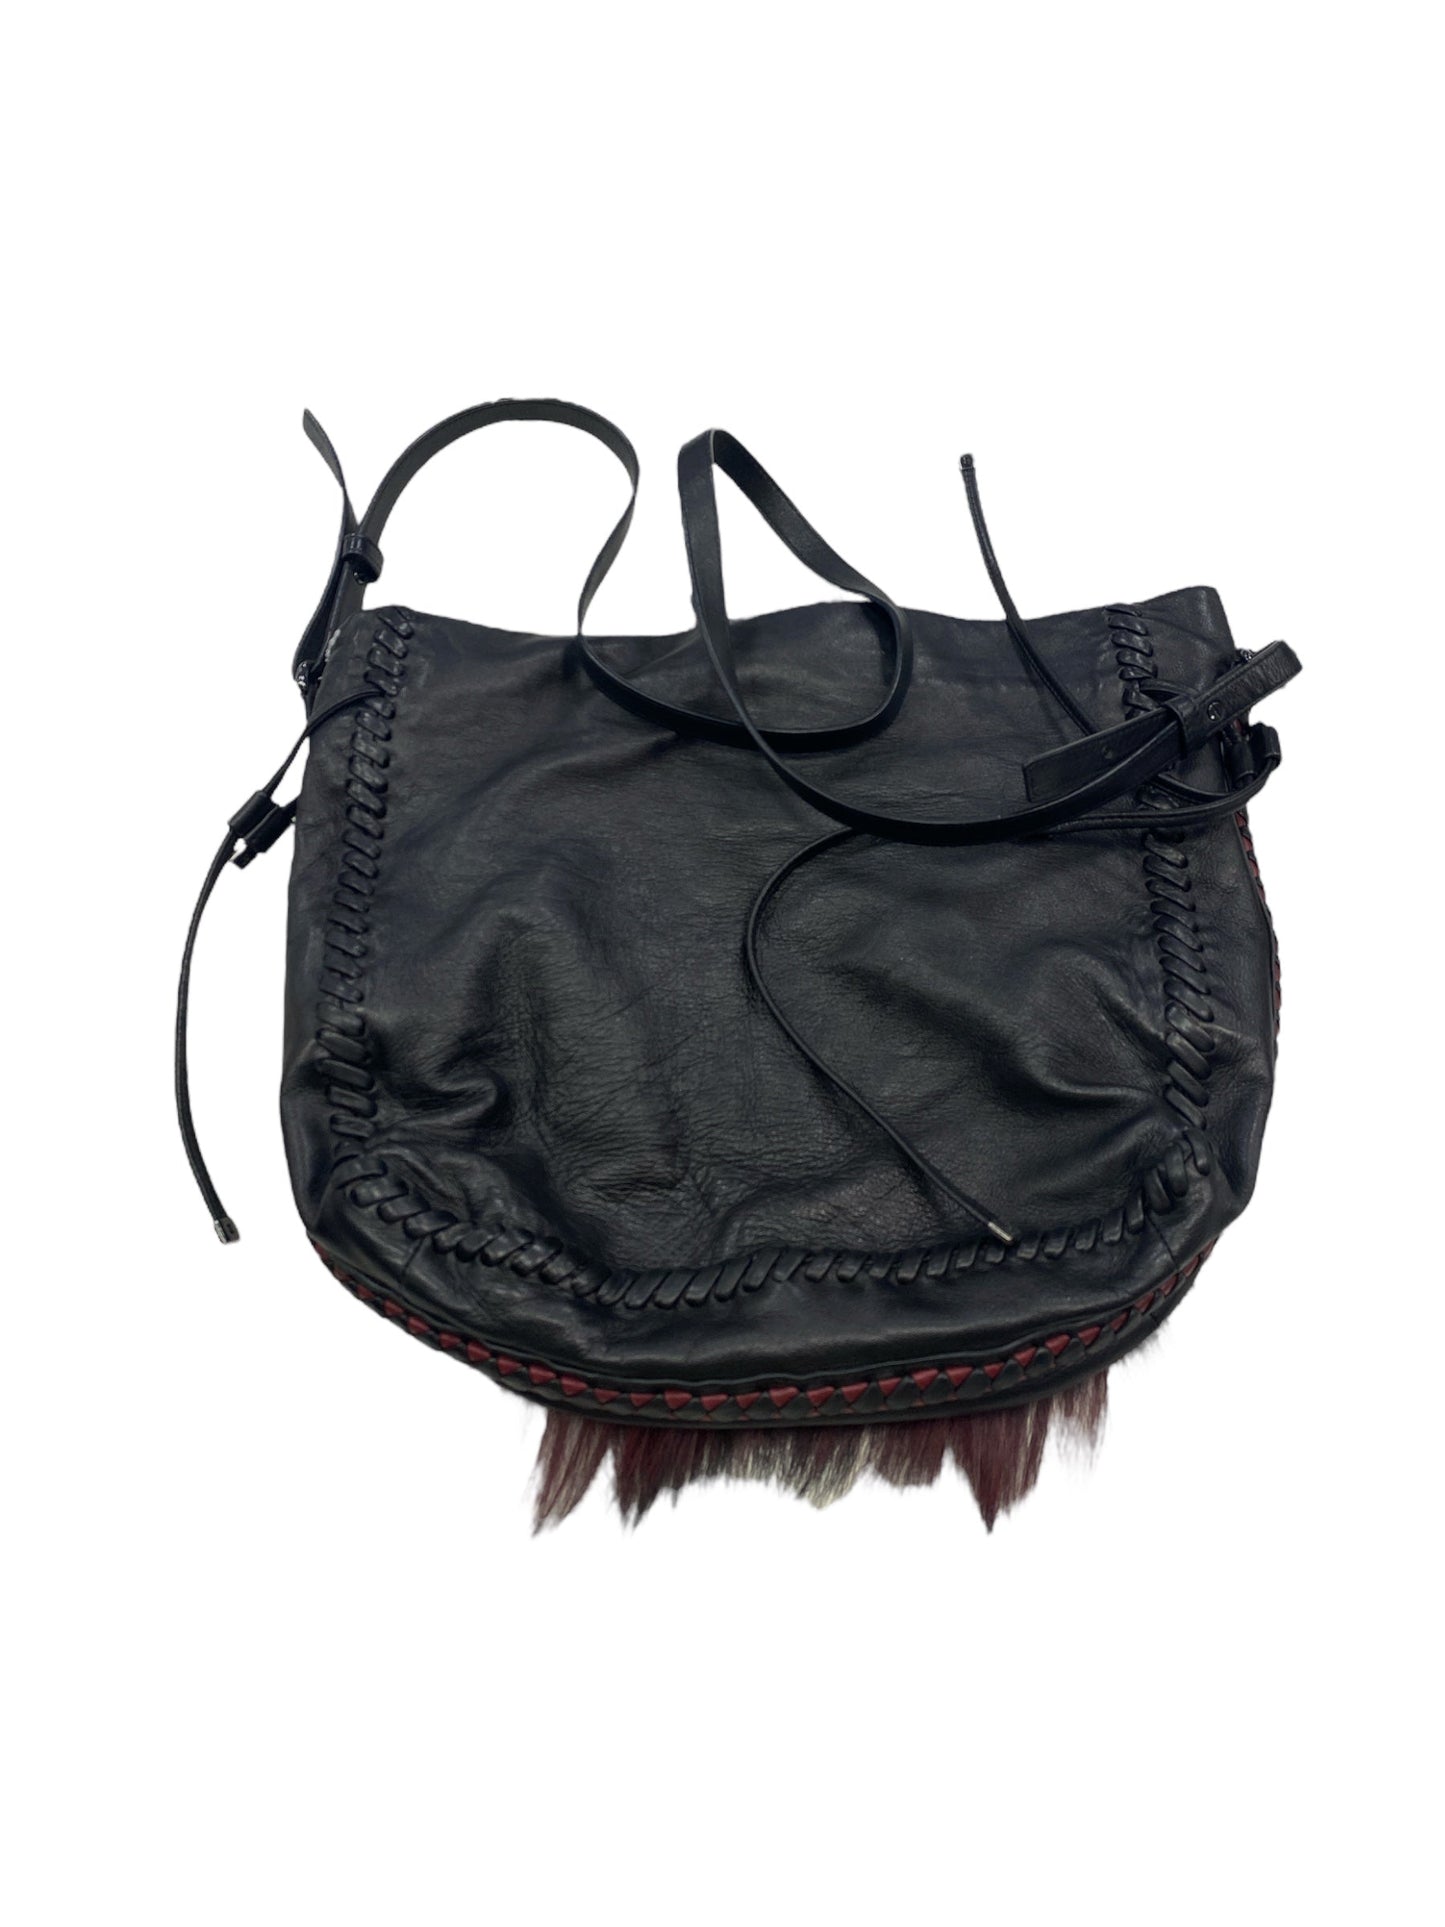 Handbag Designer By Elie Tahari  Size: Large